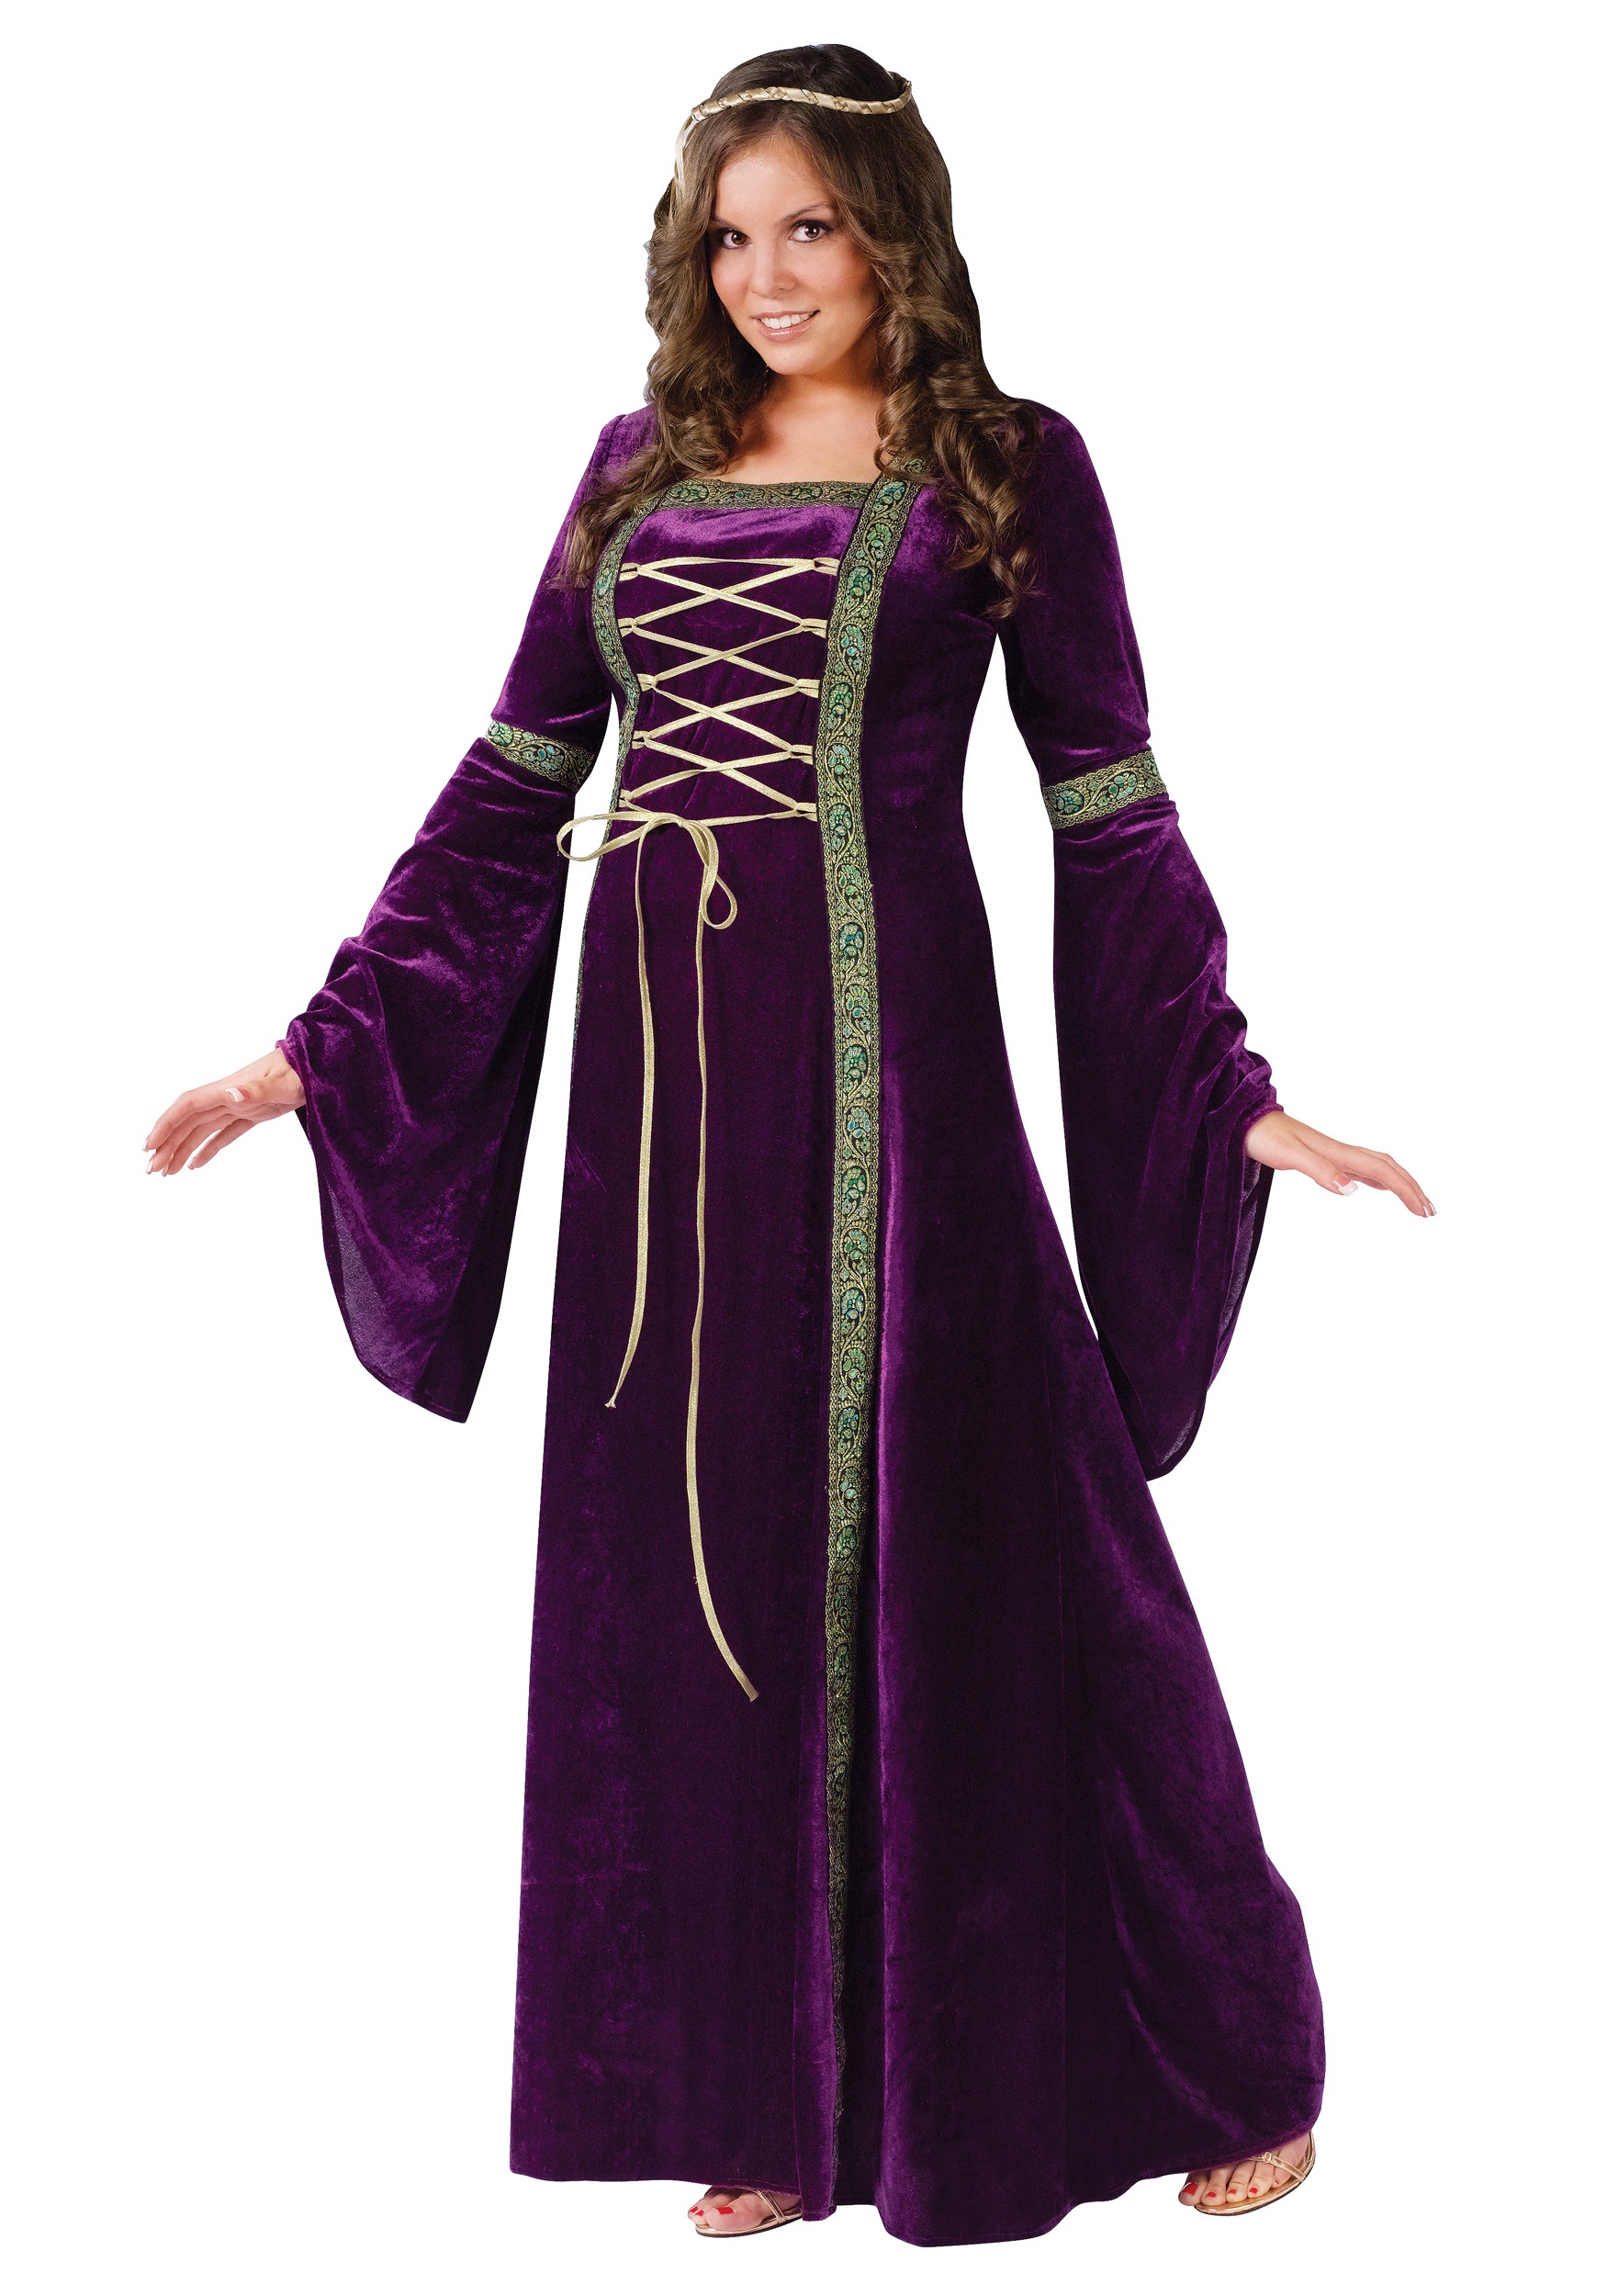 Plus Size Renaissance Lady Costume for Women